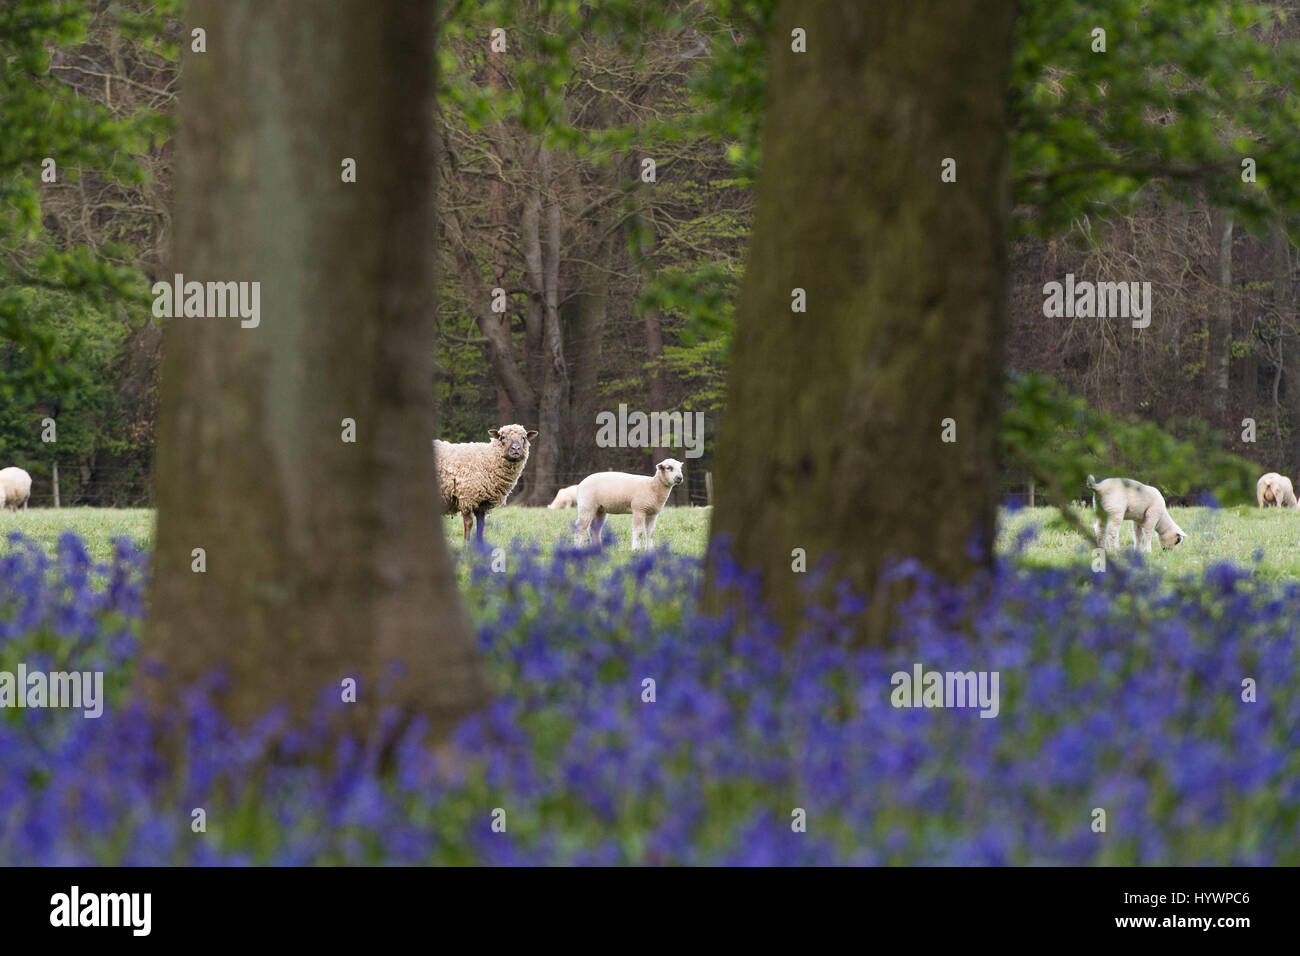 HERTFORDSHIRE, Royaume-Uni. 25 avril 2017. Jacinthes en fleurs en bois Dockey sur l'Ashridge Estate. Des travaux sont en cours pour protéger les jacinthes et encourager les visiteurs à rester sur le sentiers balisés. Banque D'Images